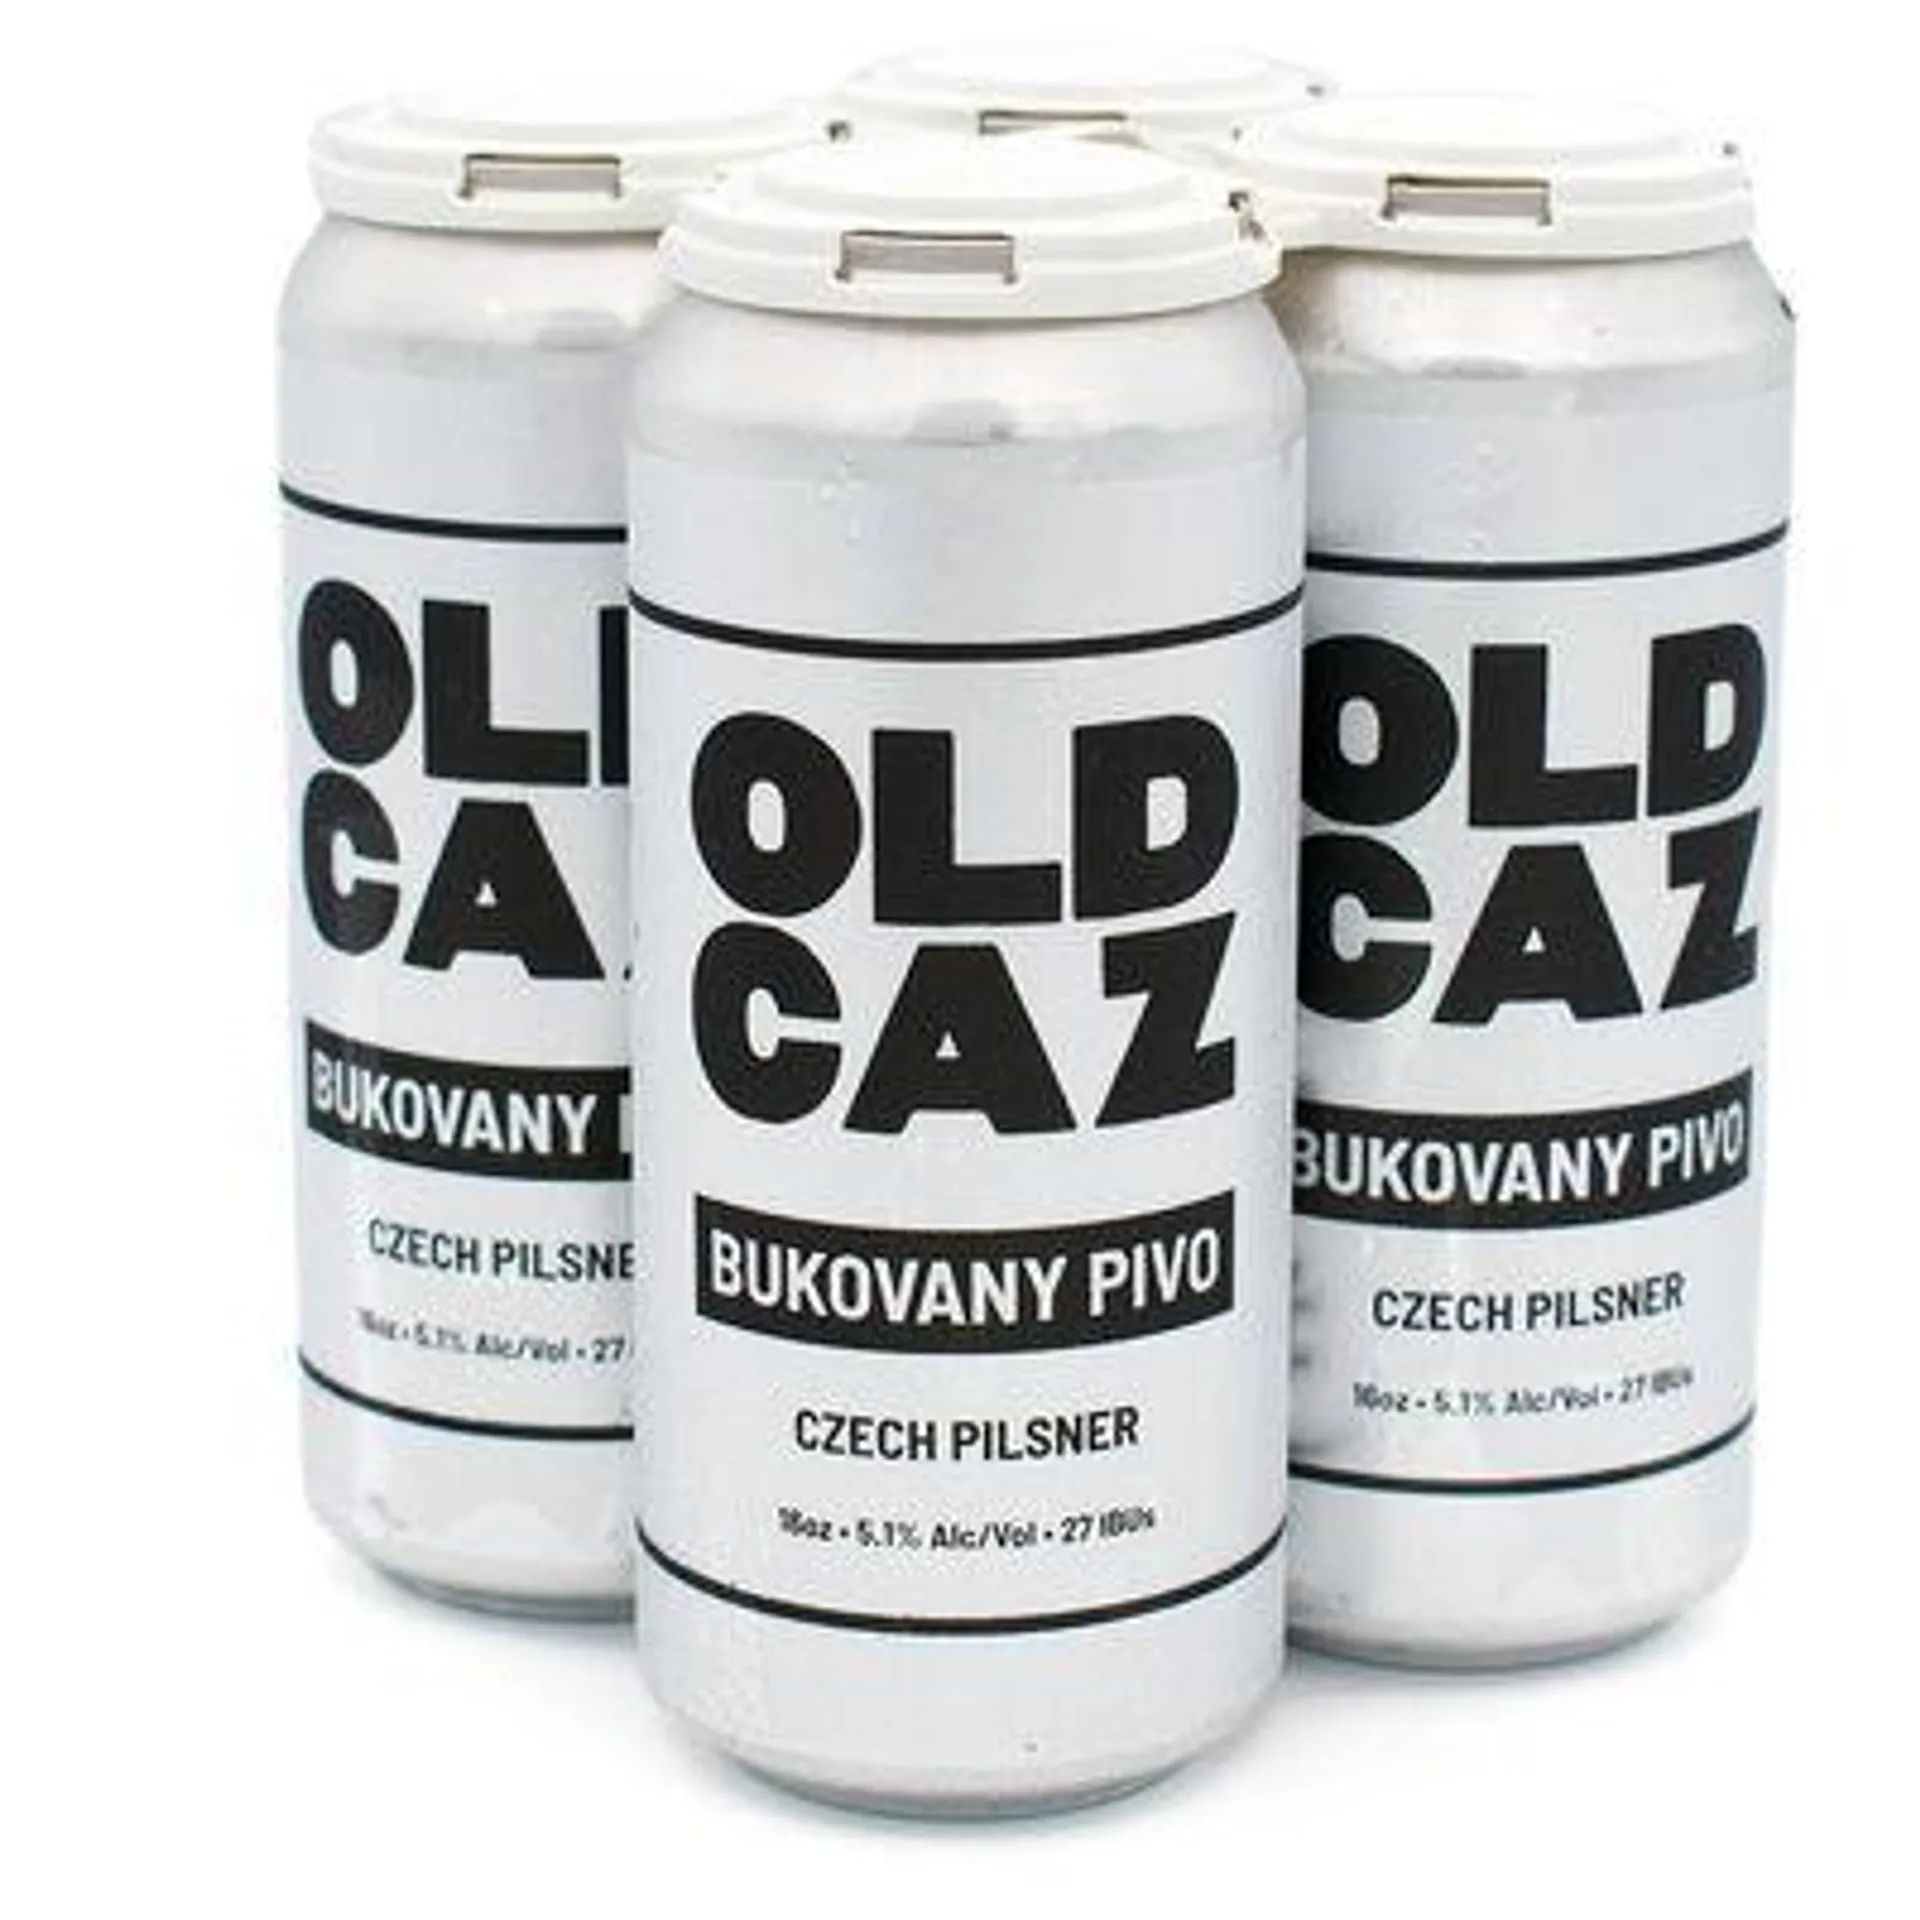 Old Caz Bukovany Pivo Czech Pilsner